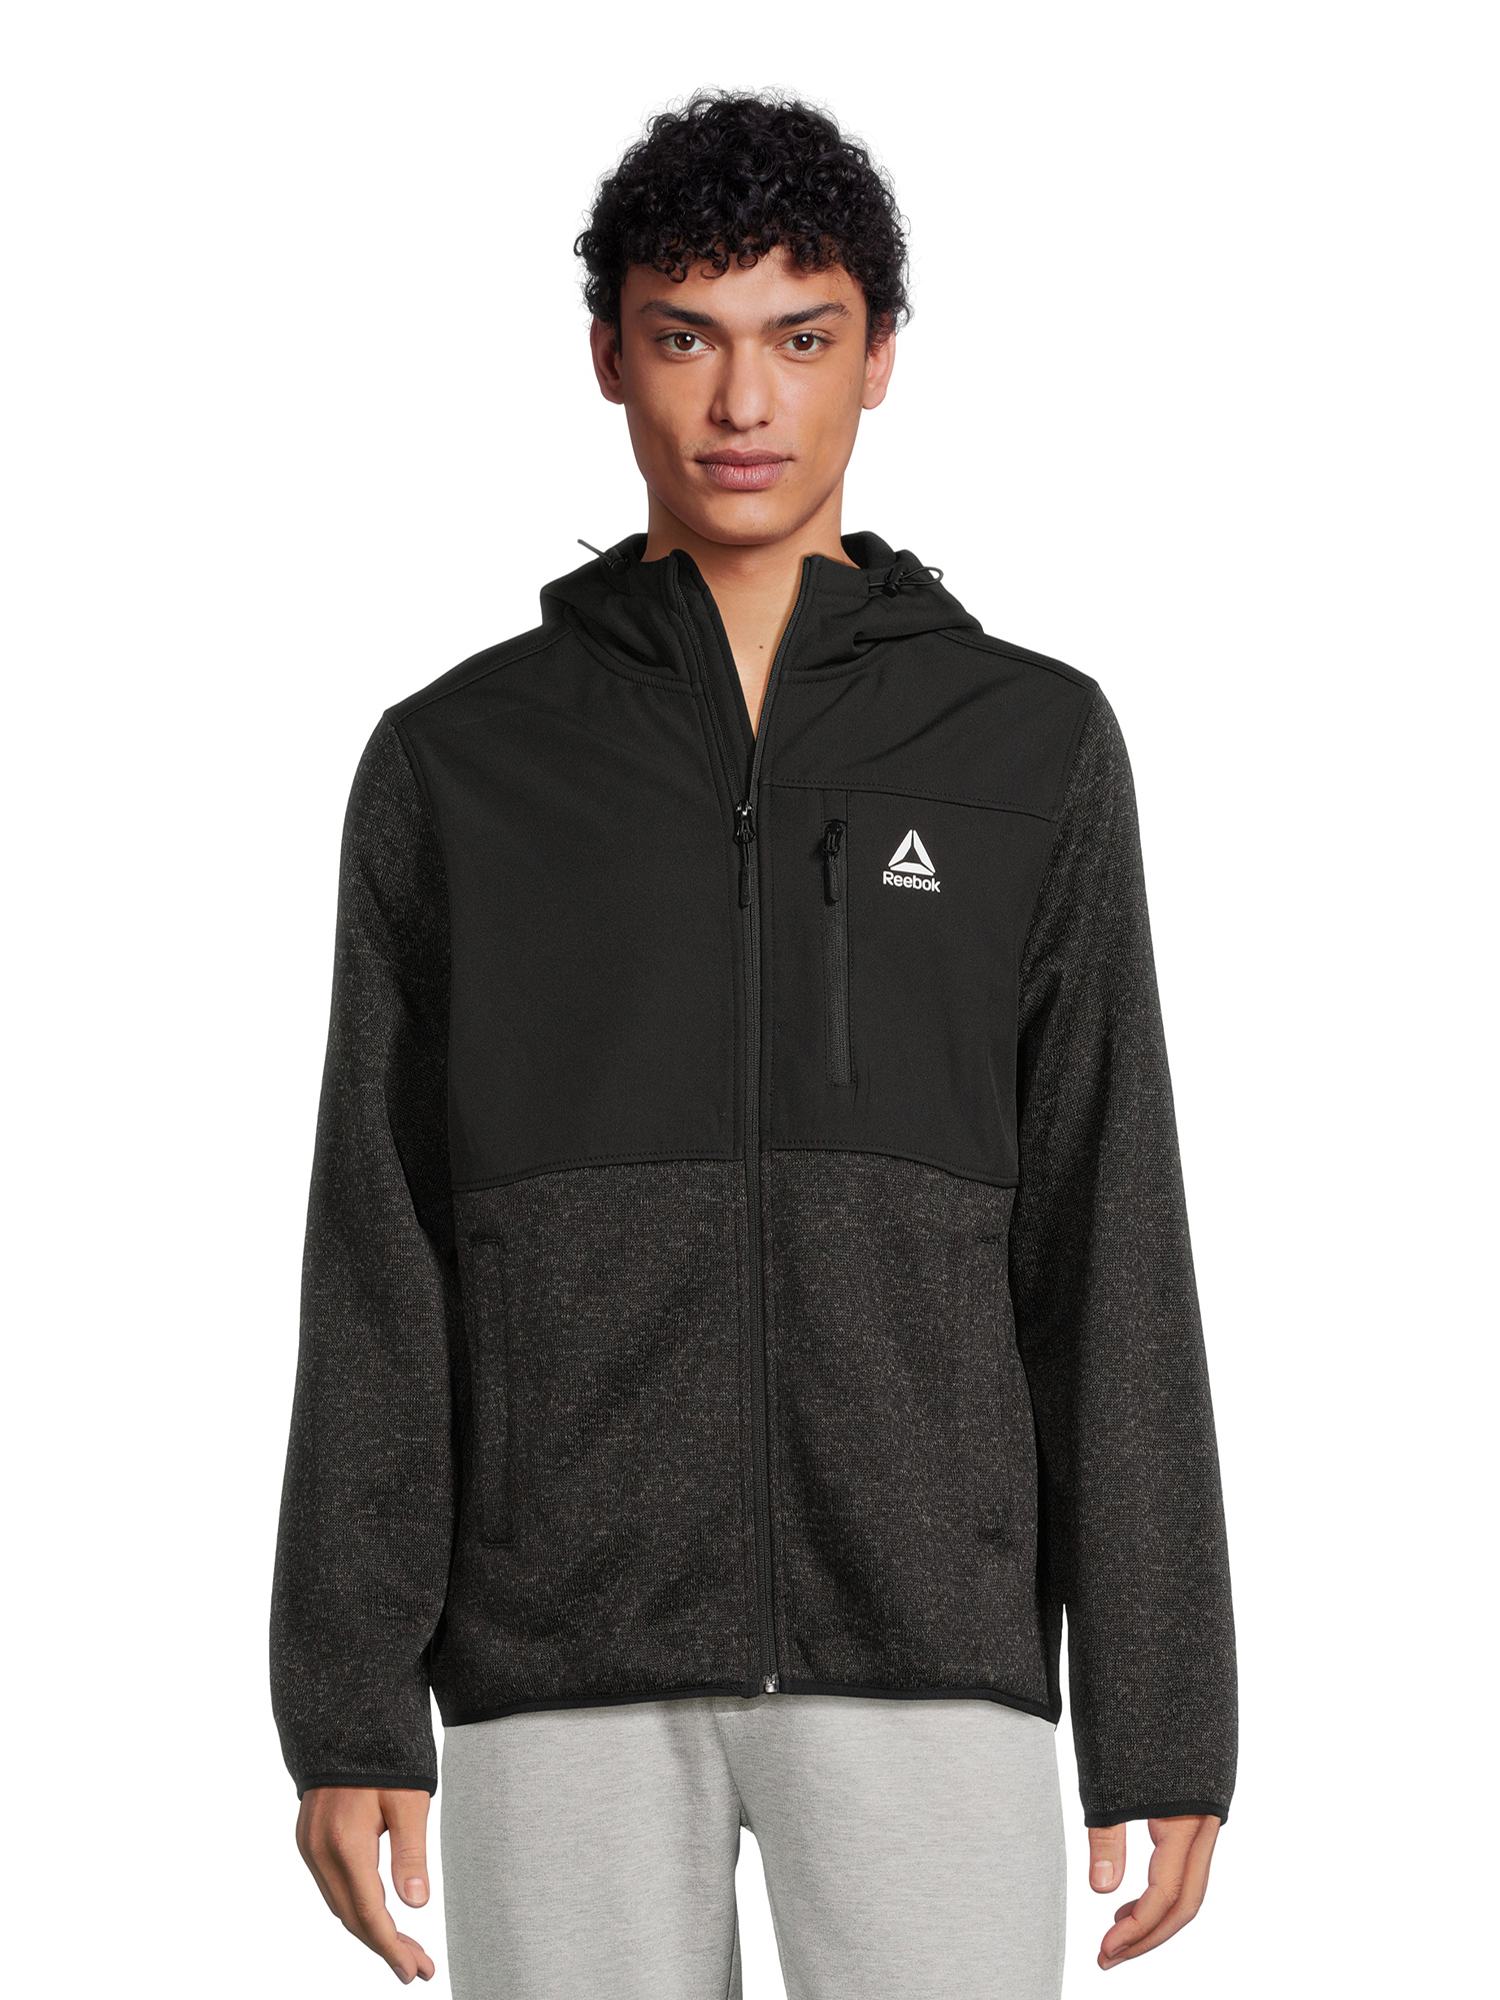 Reebok Men’s Hooded Sweater Fleece Jacket, Sizes M-2XL - image 1 of 5